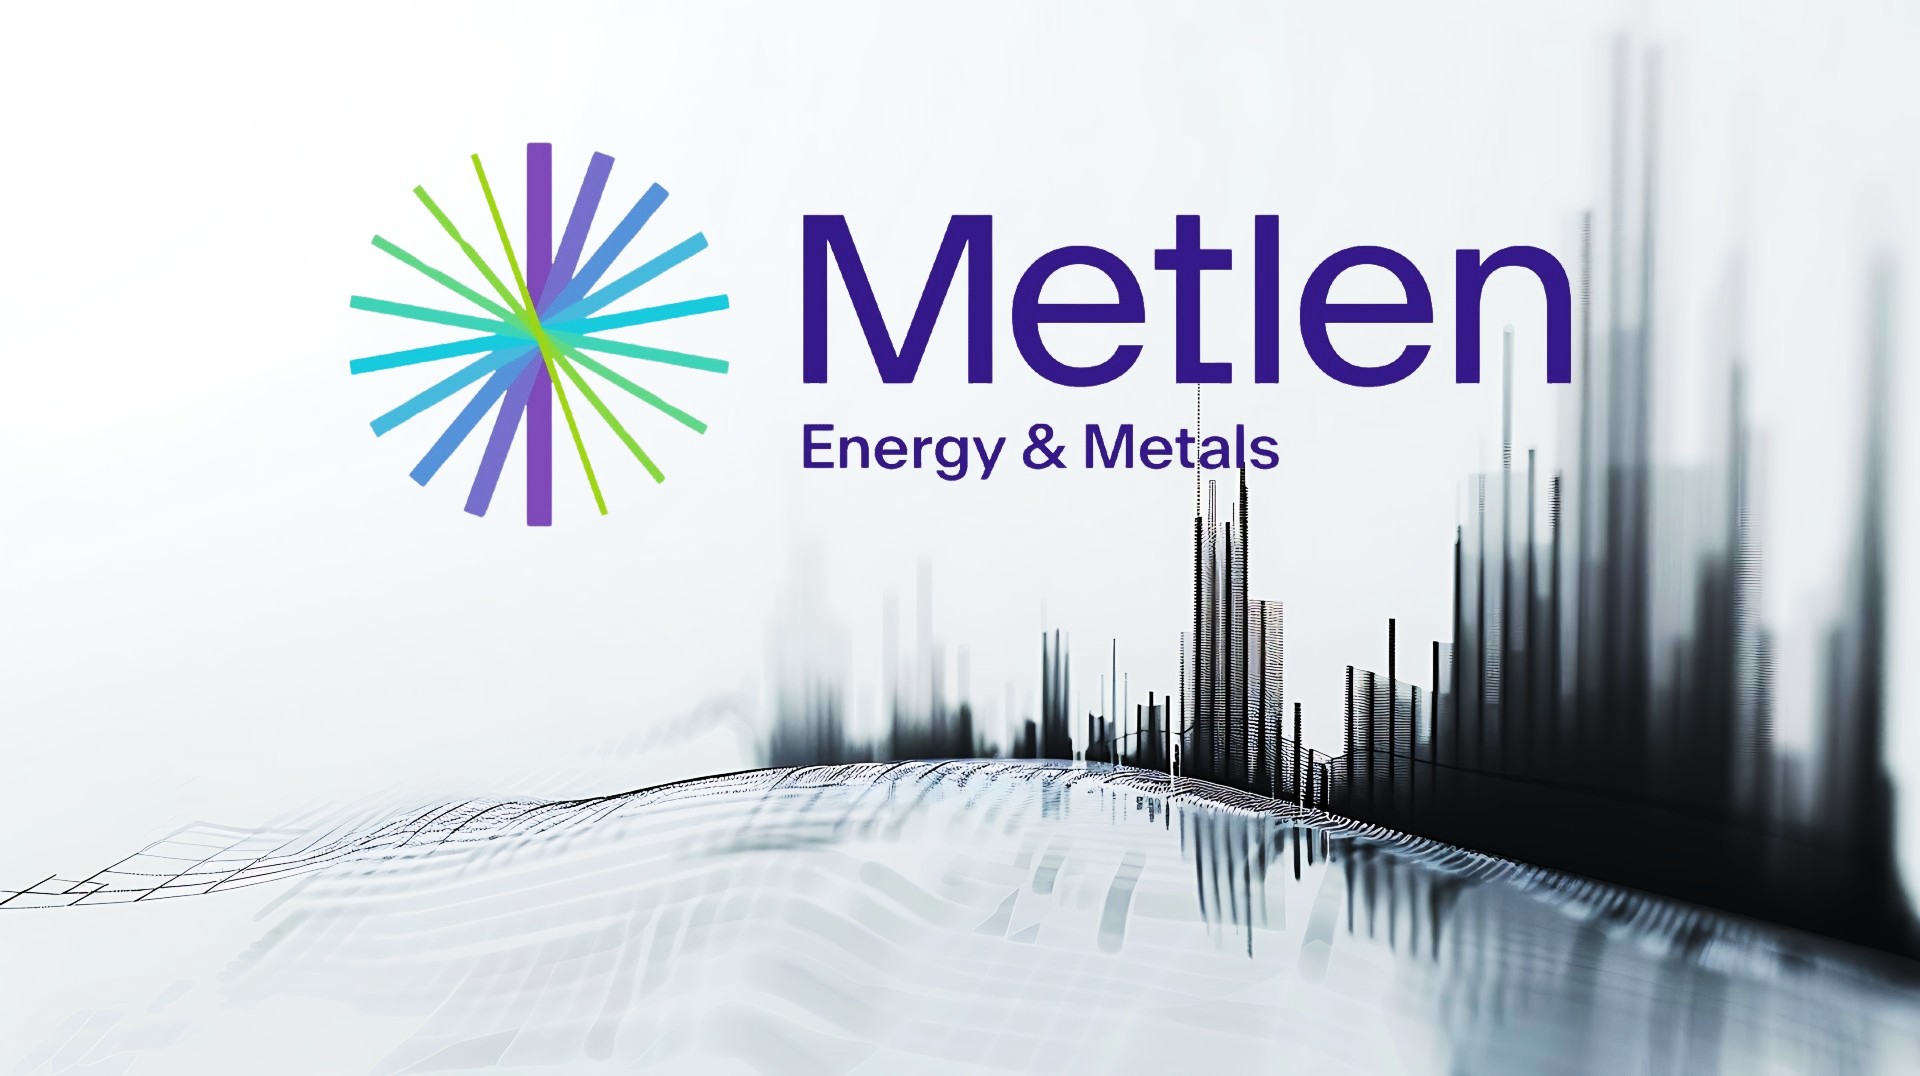 Τα χρονοδιαγράμματα και οι στόχοι της Metlen για το Λονδίνο – Καθοριστικό το επόμενο 12μηνο για τον όμιλο εν αναμονή επενδυτικής βαθμίδας και την είσοδο στη… Μέκκα των ευρωπαϊκών επενδύσεων – Σε 40 χώρες και πέντε ηπείρους δραστηριοποιείται πλέον ο όμιλος!